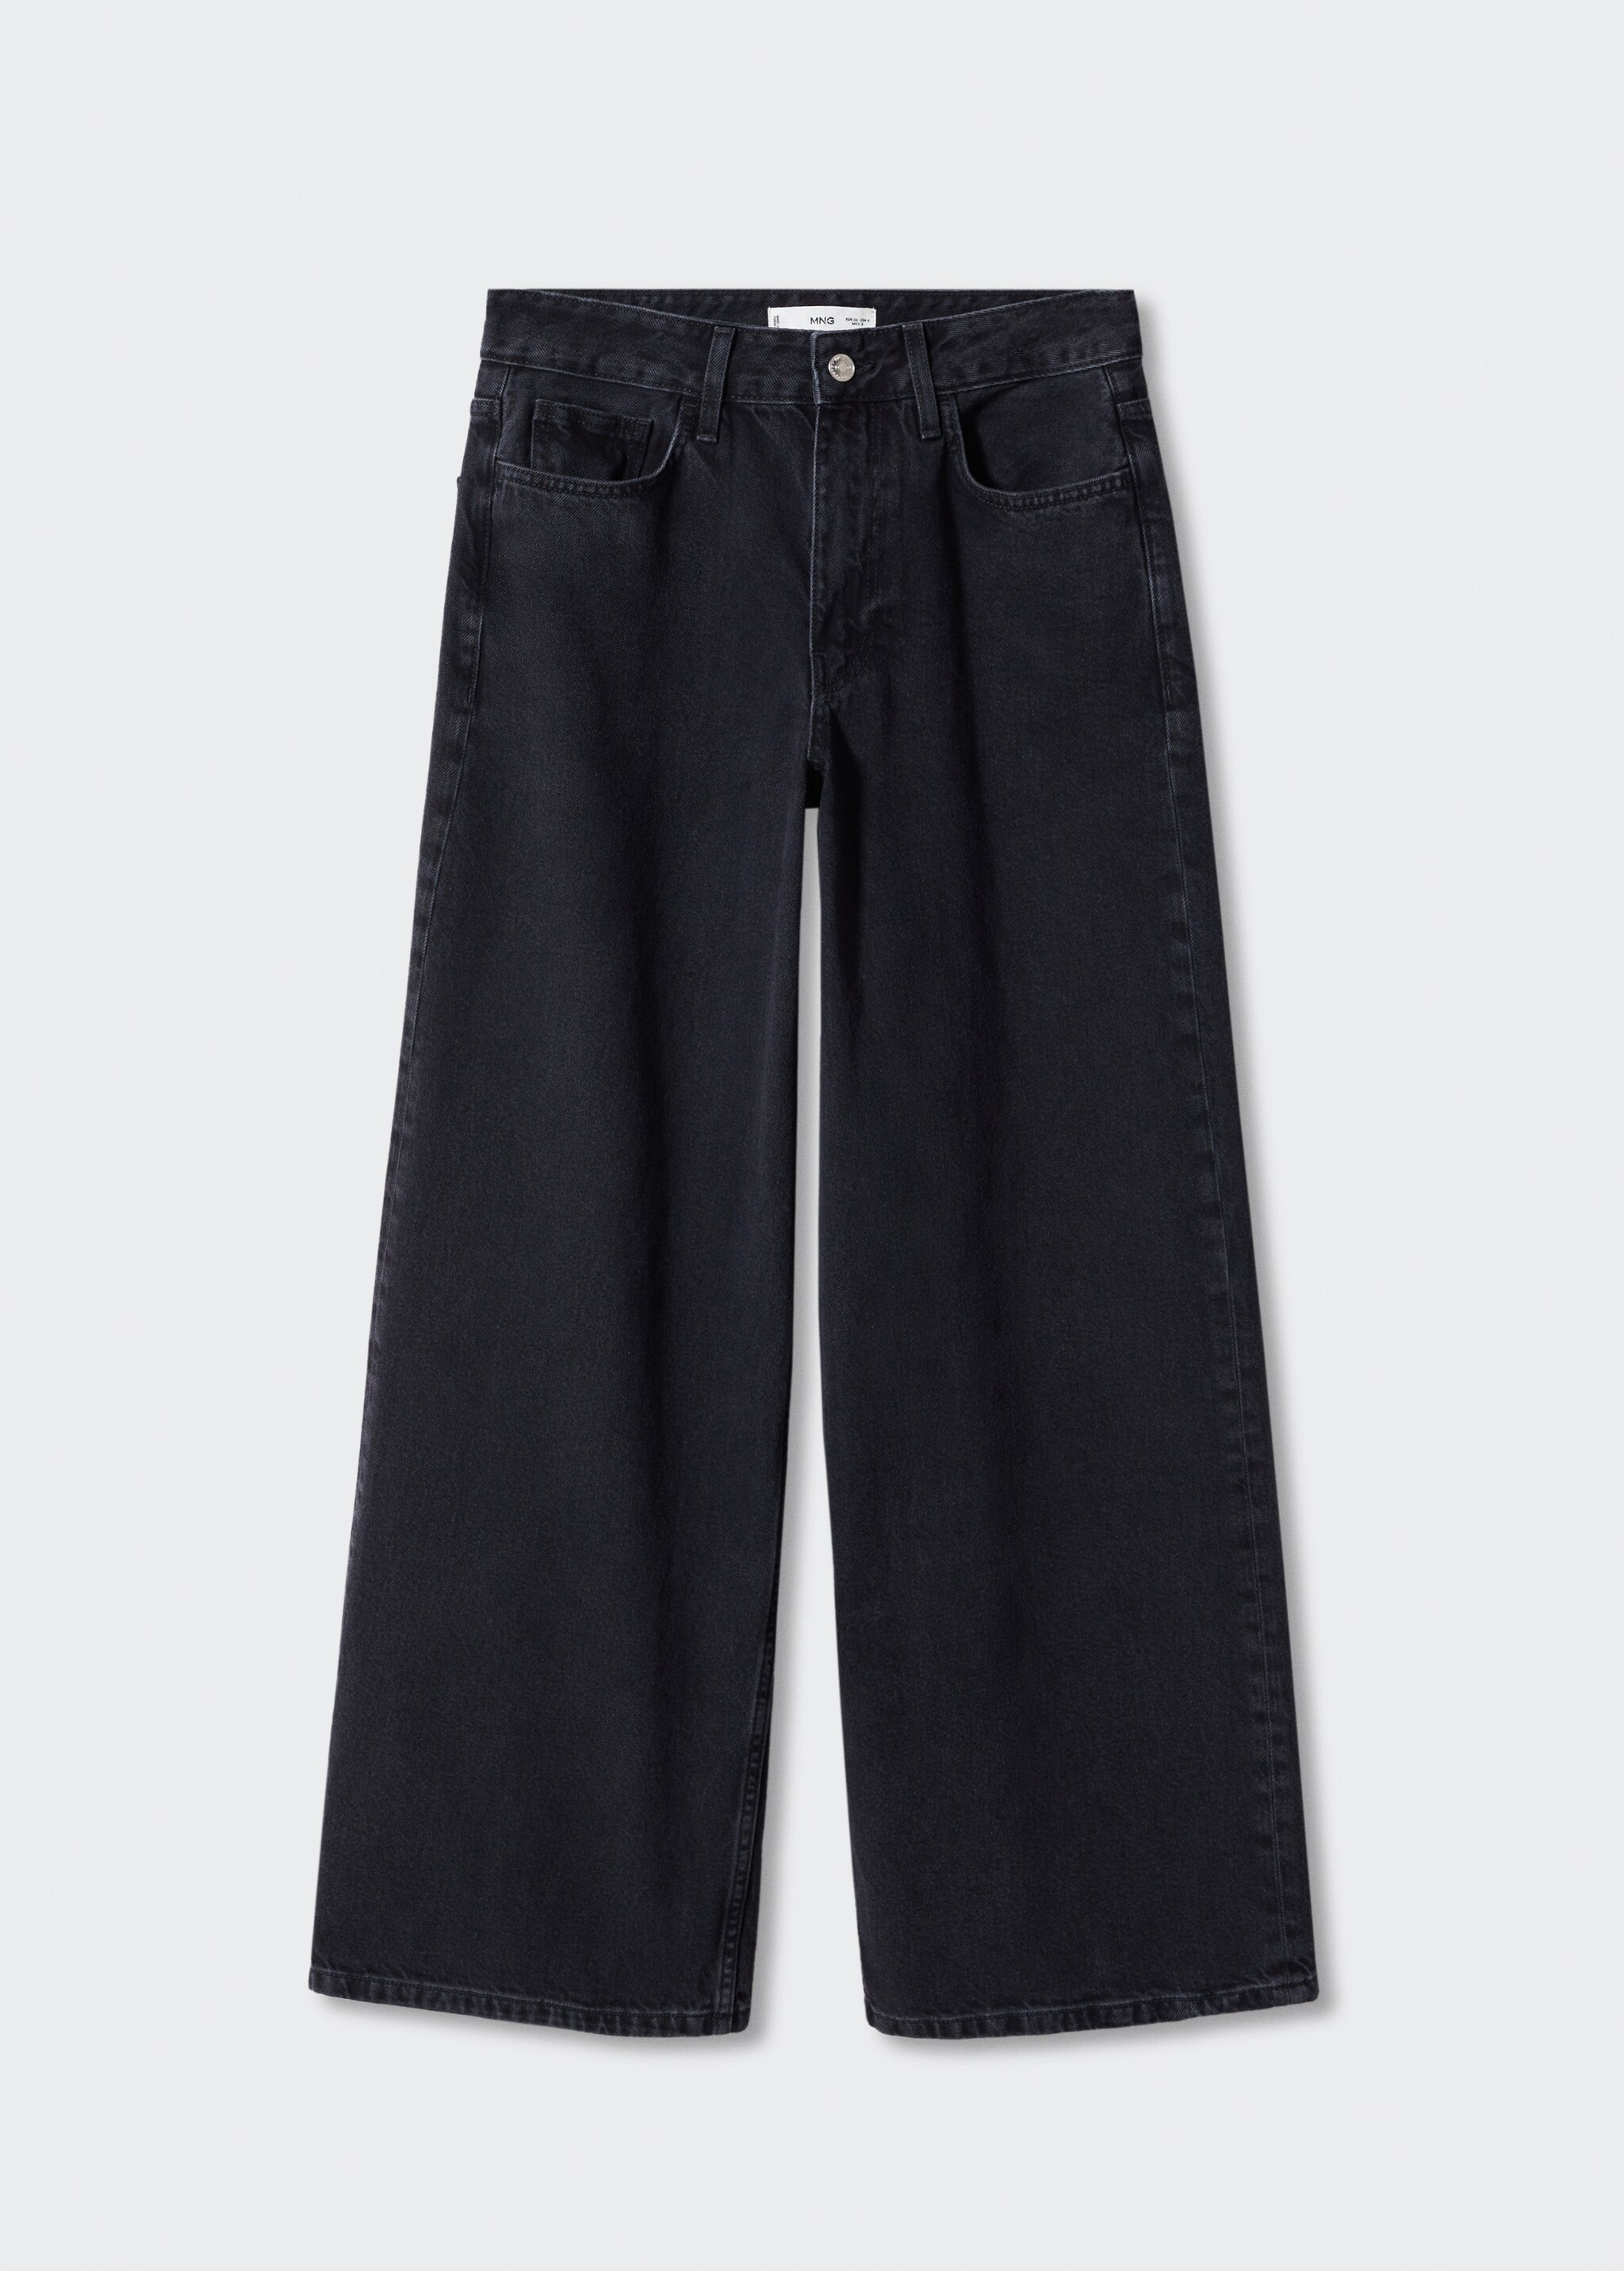 Jeans super wideleg loose oversize vita bassa - Articolo senza modello